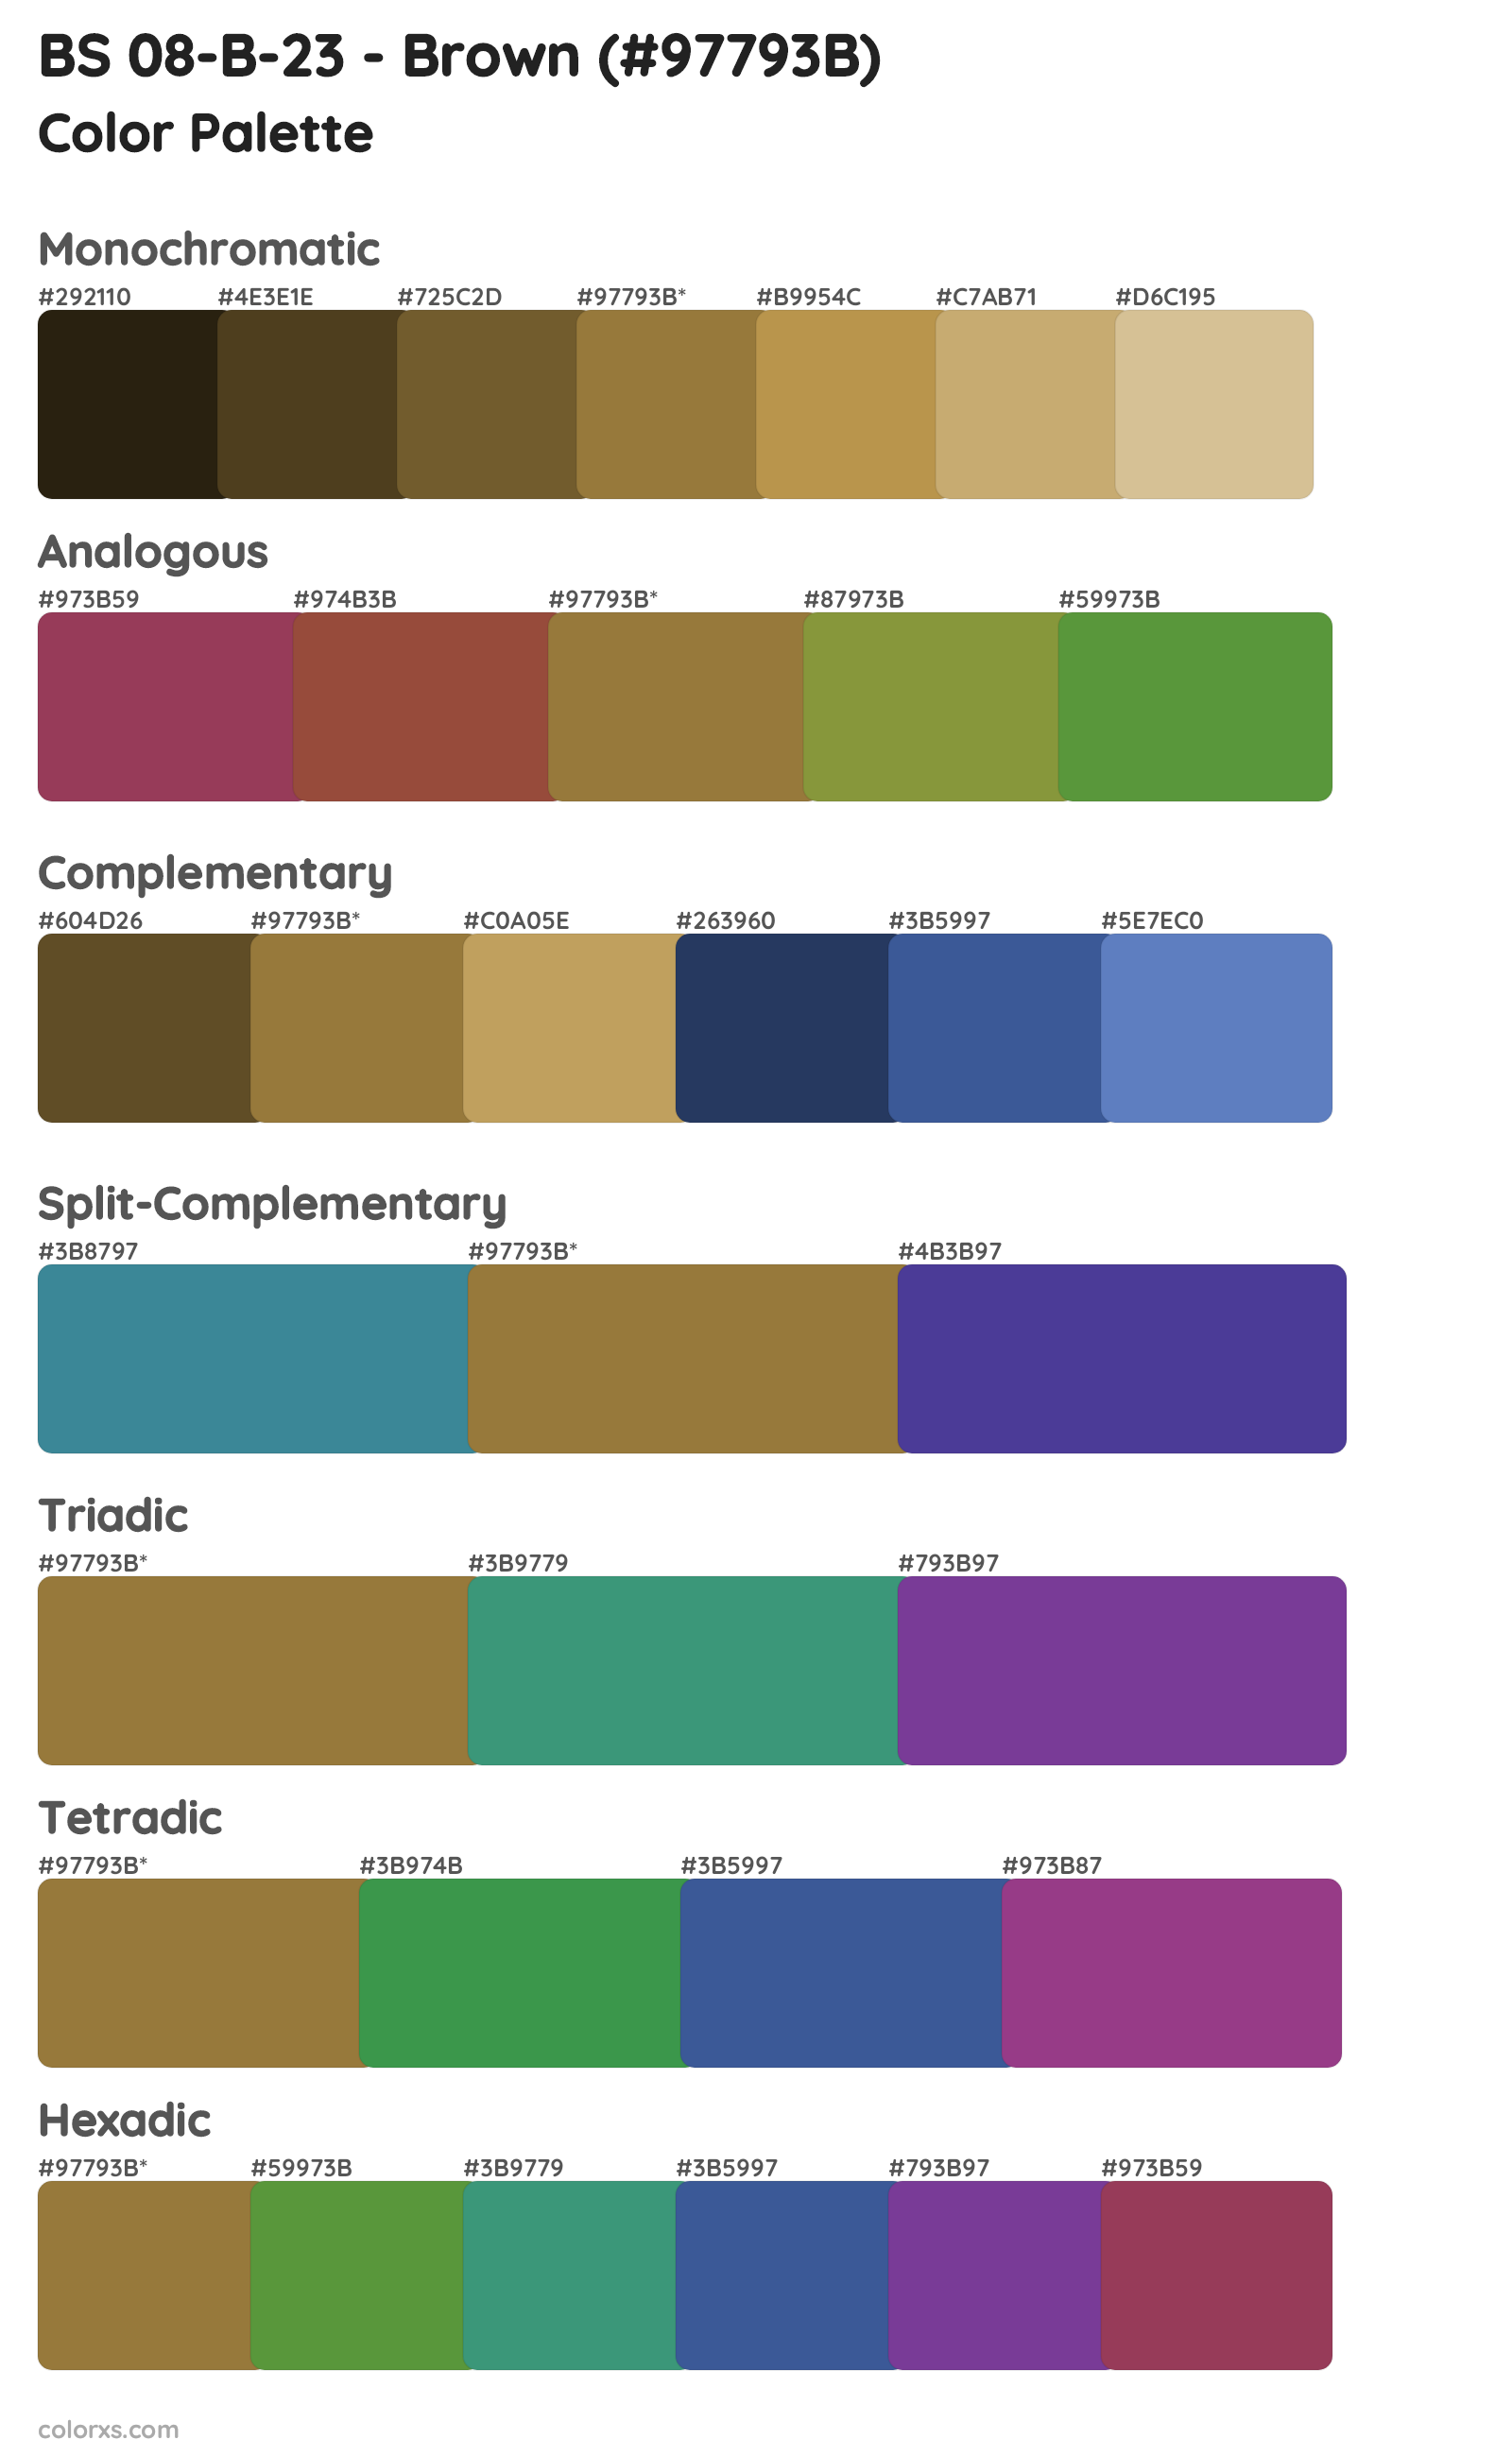 BS 08-B-23 - Brown Color Scheme Palettes